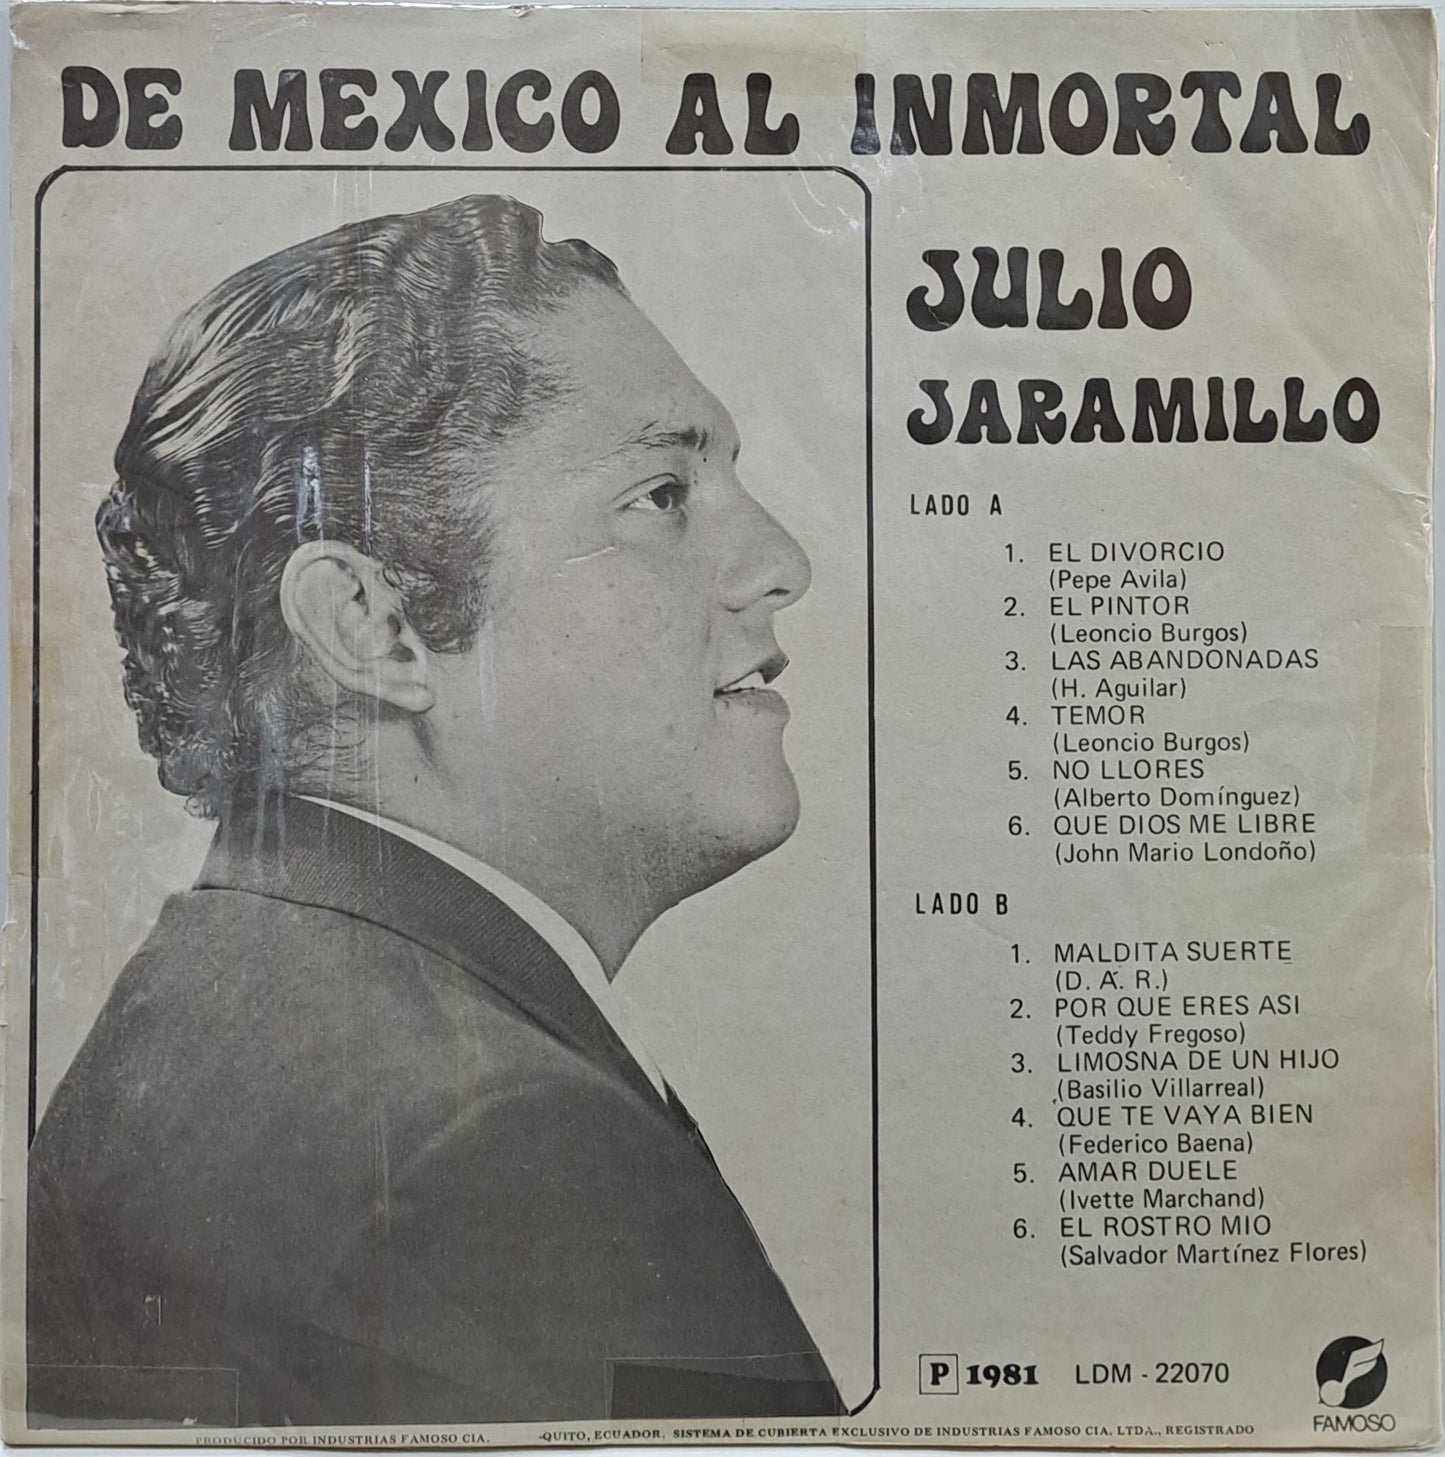 JULIO JARAMILLO - DE MEXICO AL INMORTAL  LP